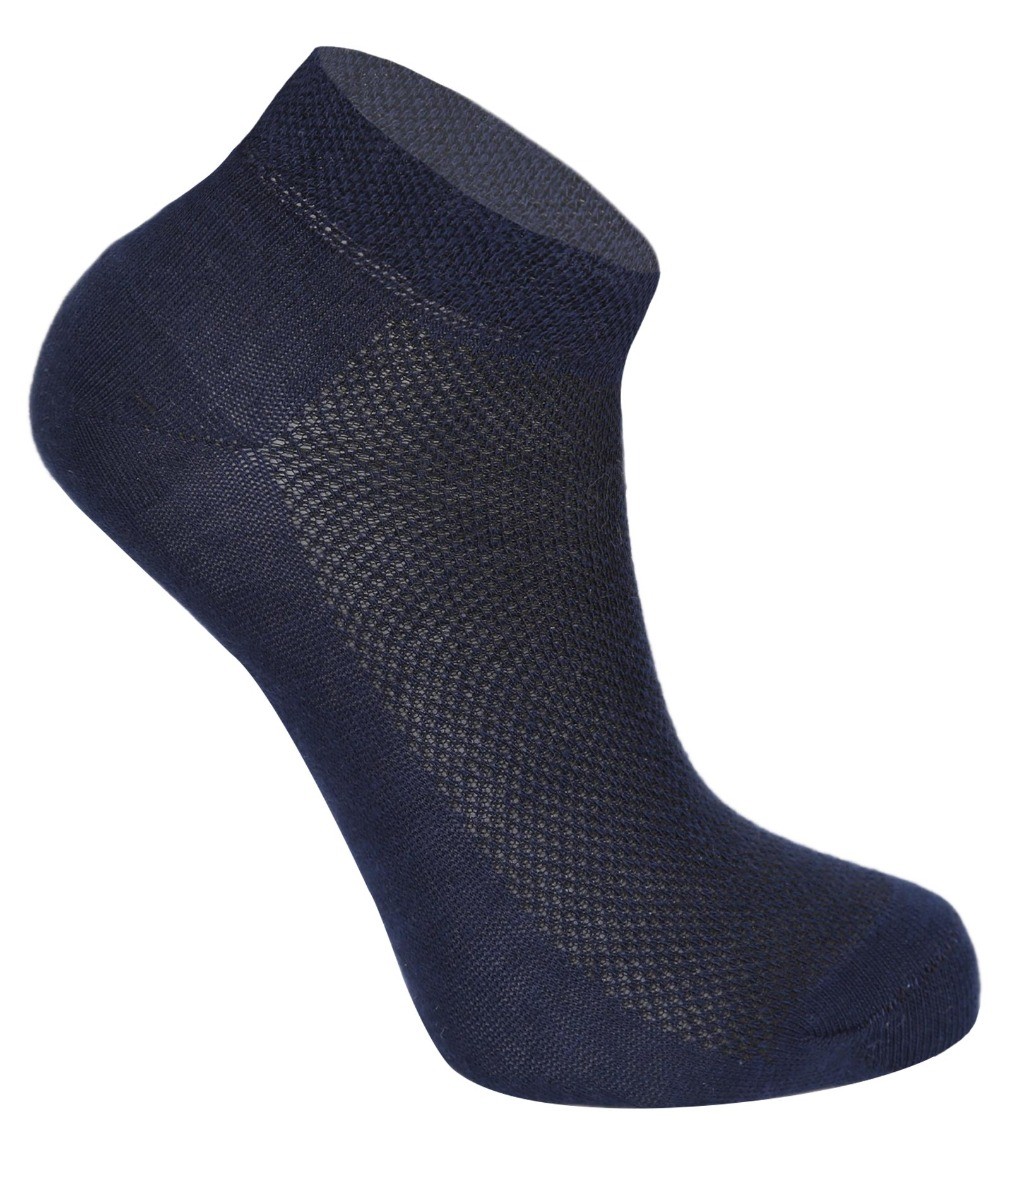 Kinder Unisex Socken aus Baumwolle - Navy blau